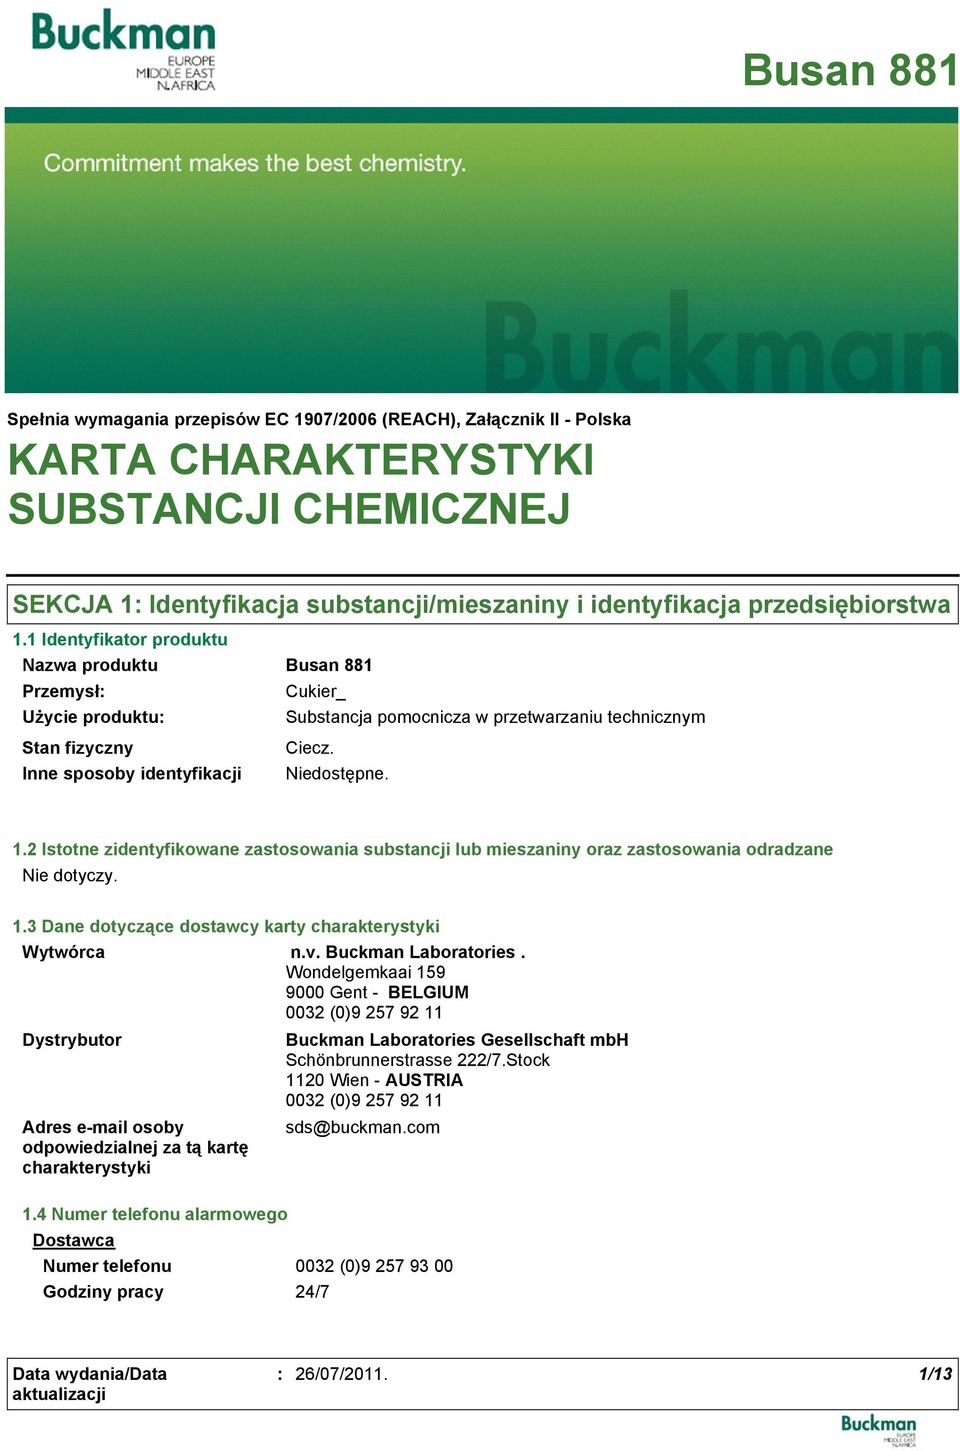 2 Istotne zidentyfikowane zastosowania substancji lub mieszaniny oraz zastosowania odradzane 1.3 Dane dotyczące dostawcy karty charakterystyki Wytwórca n.v. Buckman Laboratories.